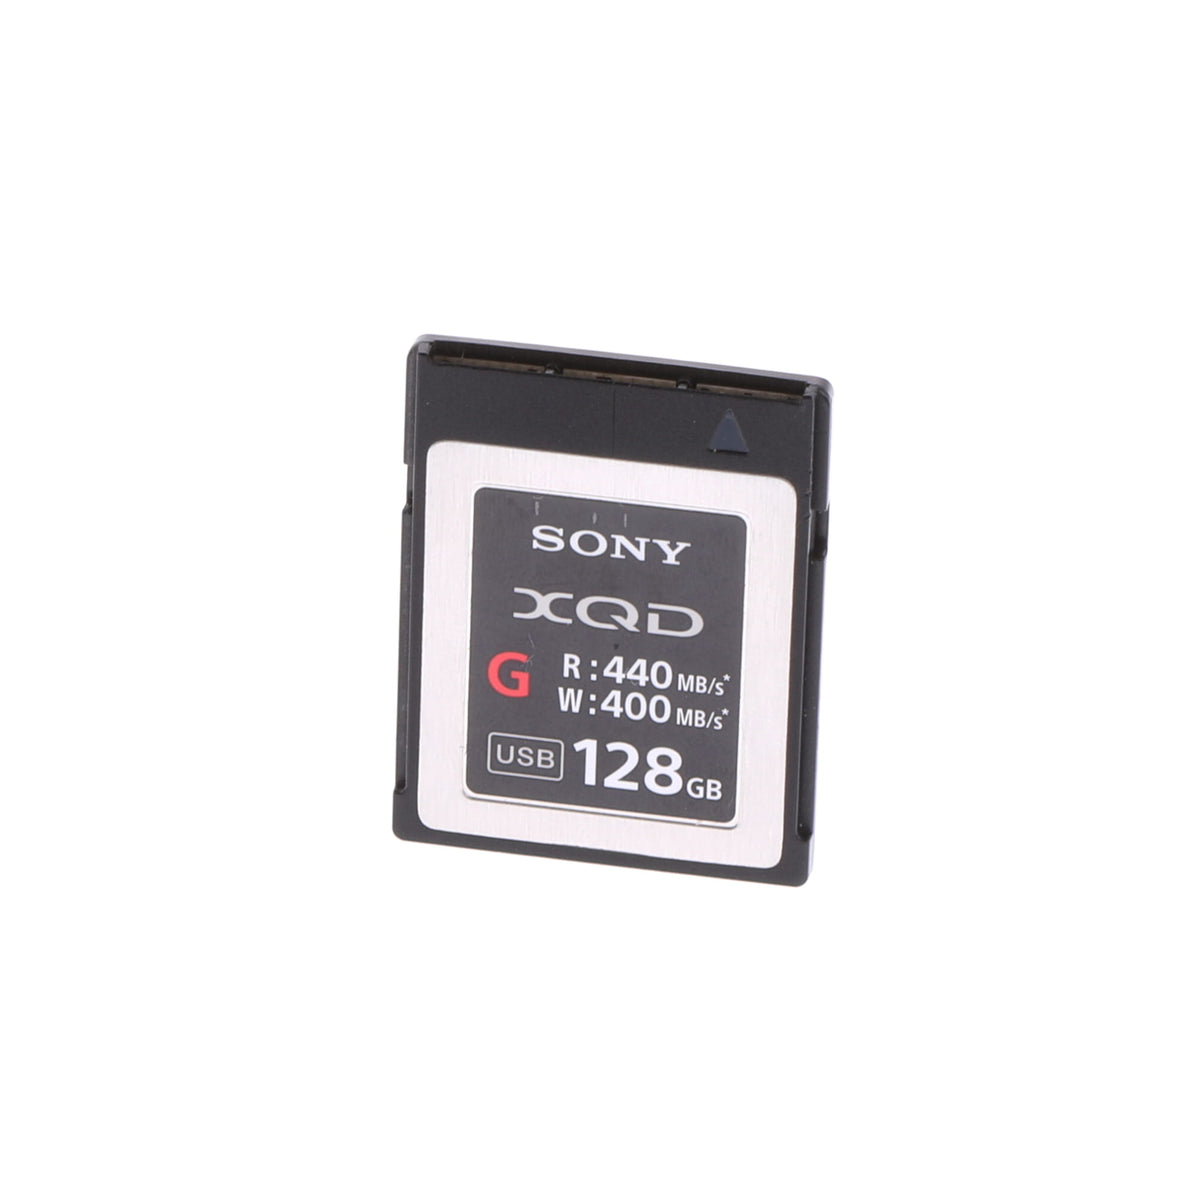 【大創業祭】【中古品】SONY QD-G128E XQDメモリーカード Gシリーズ 128GB